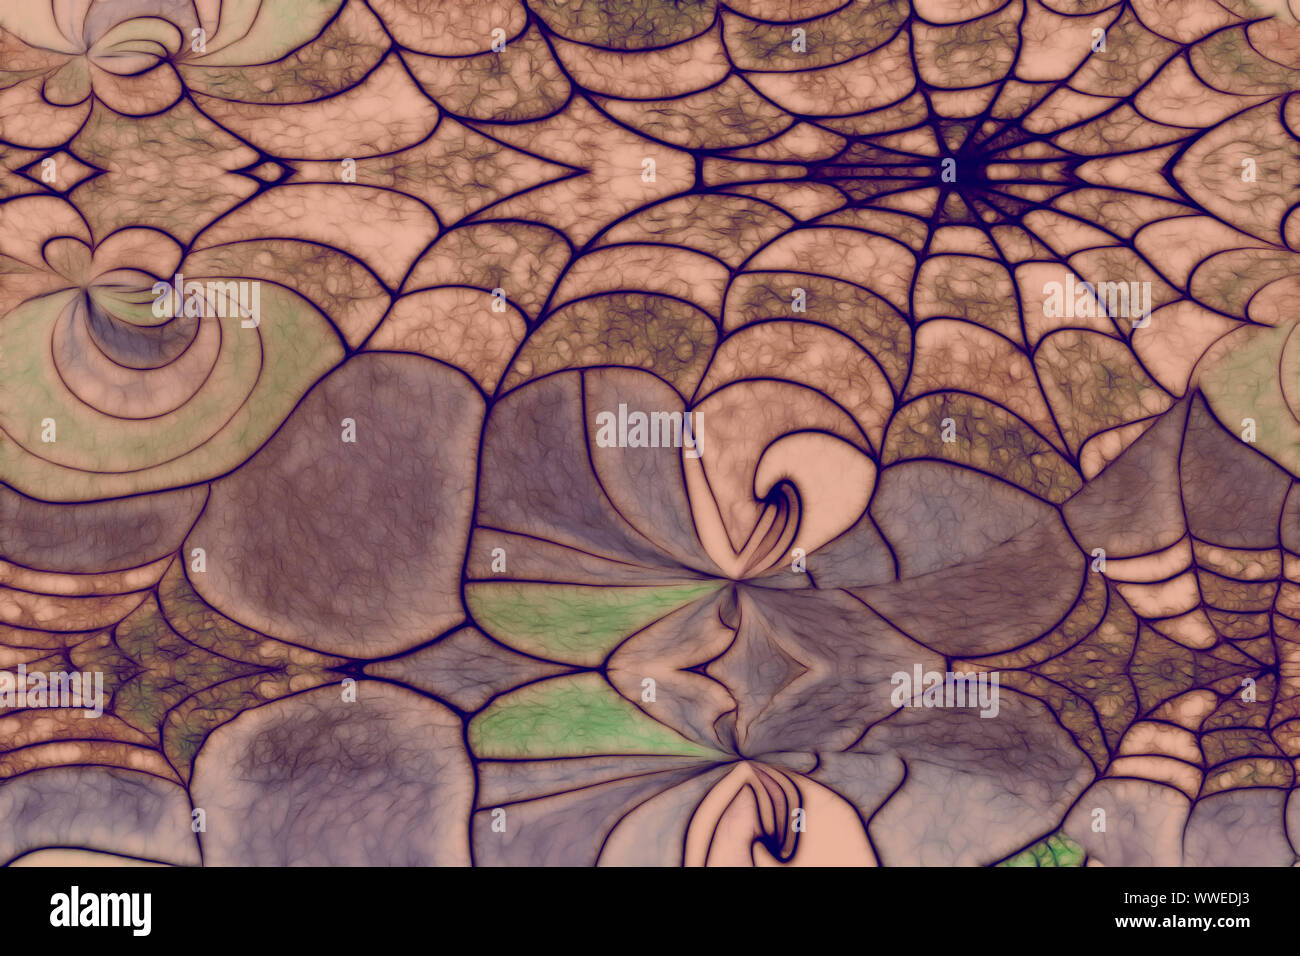 Spinnennetz, Photocollage, illustriert Stockfoto